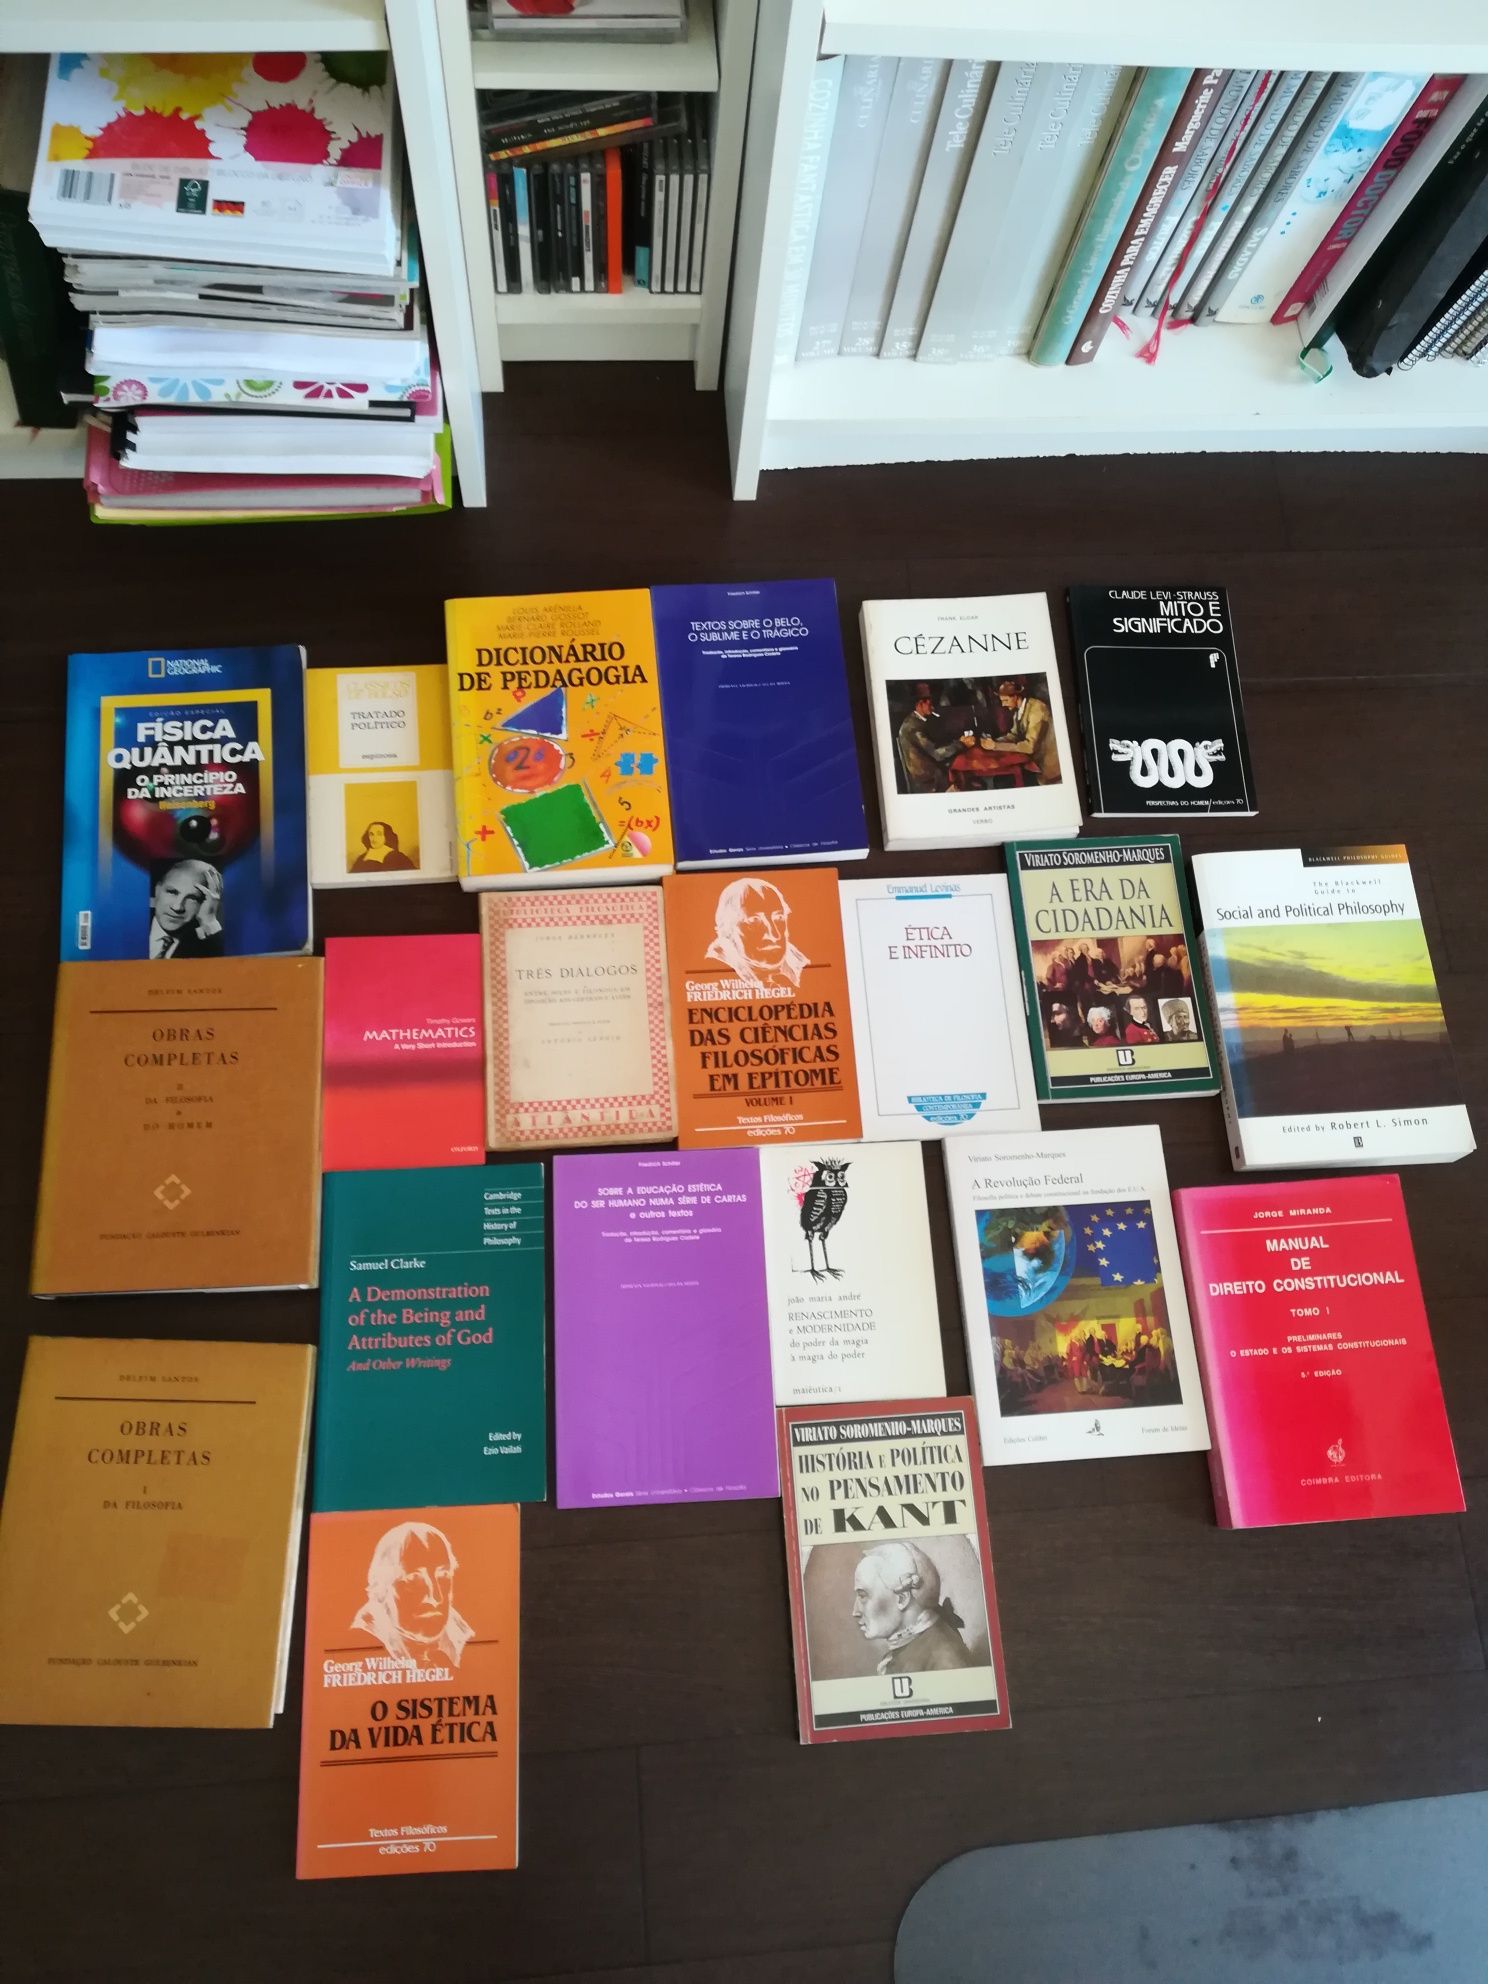 Diversos livros - filosofia, ética, matemática, estética